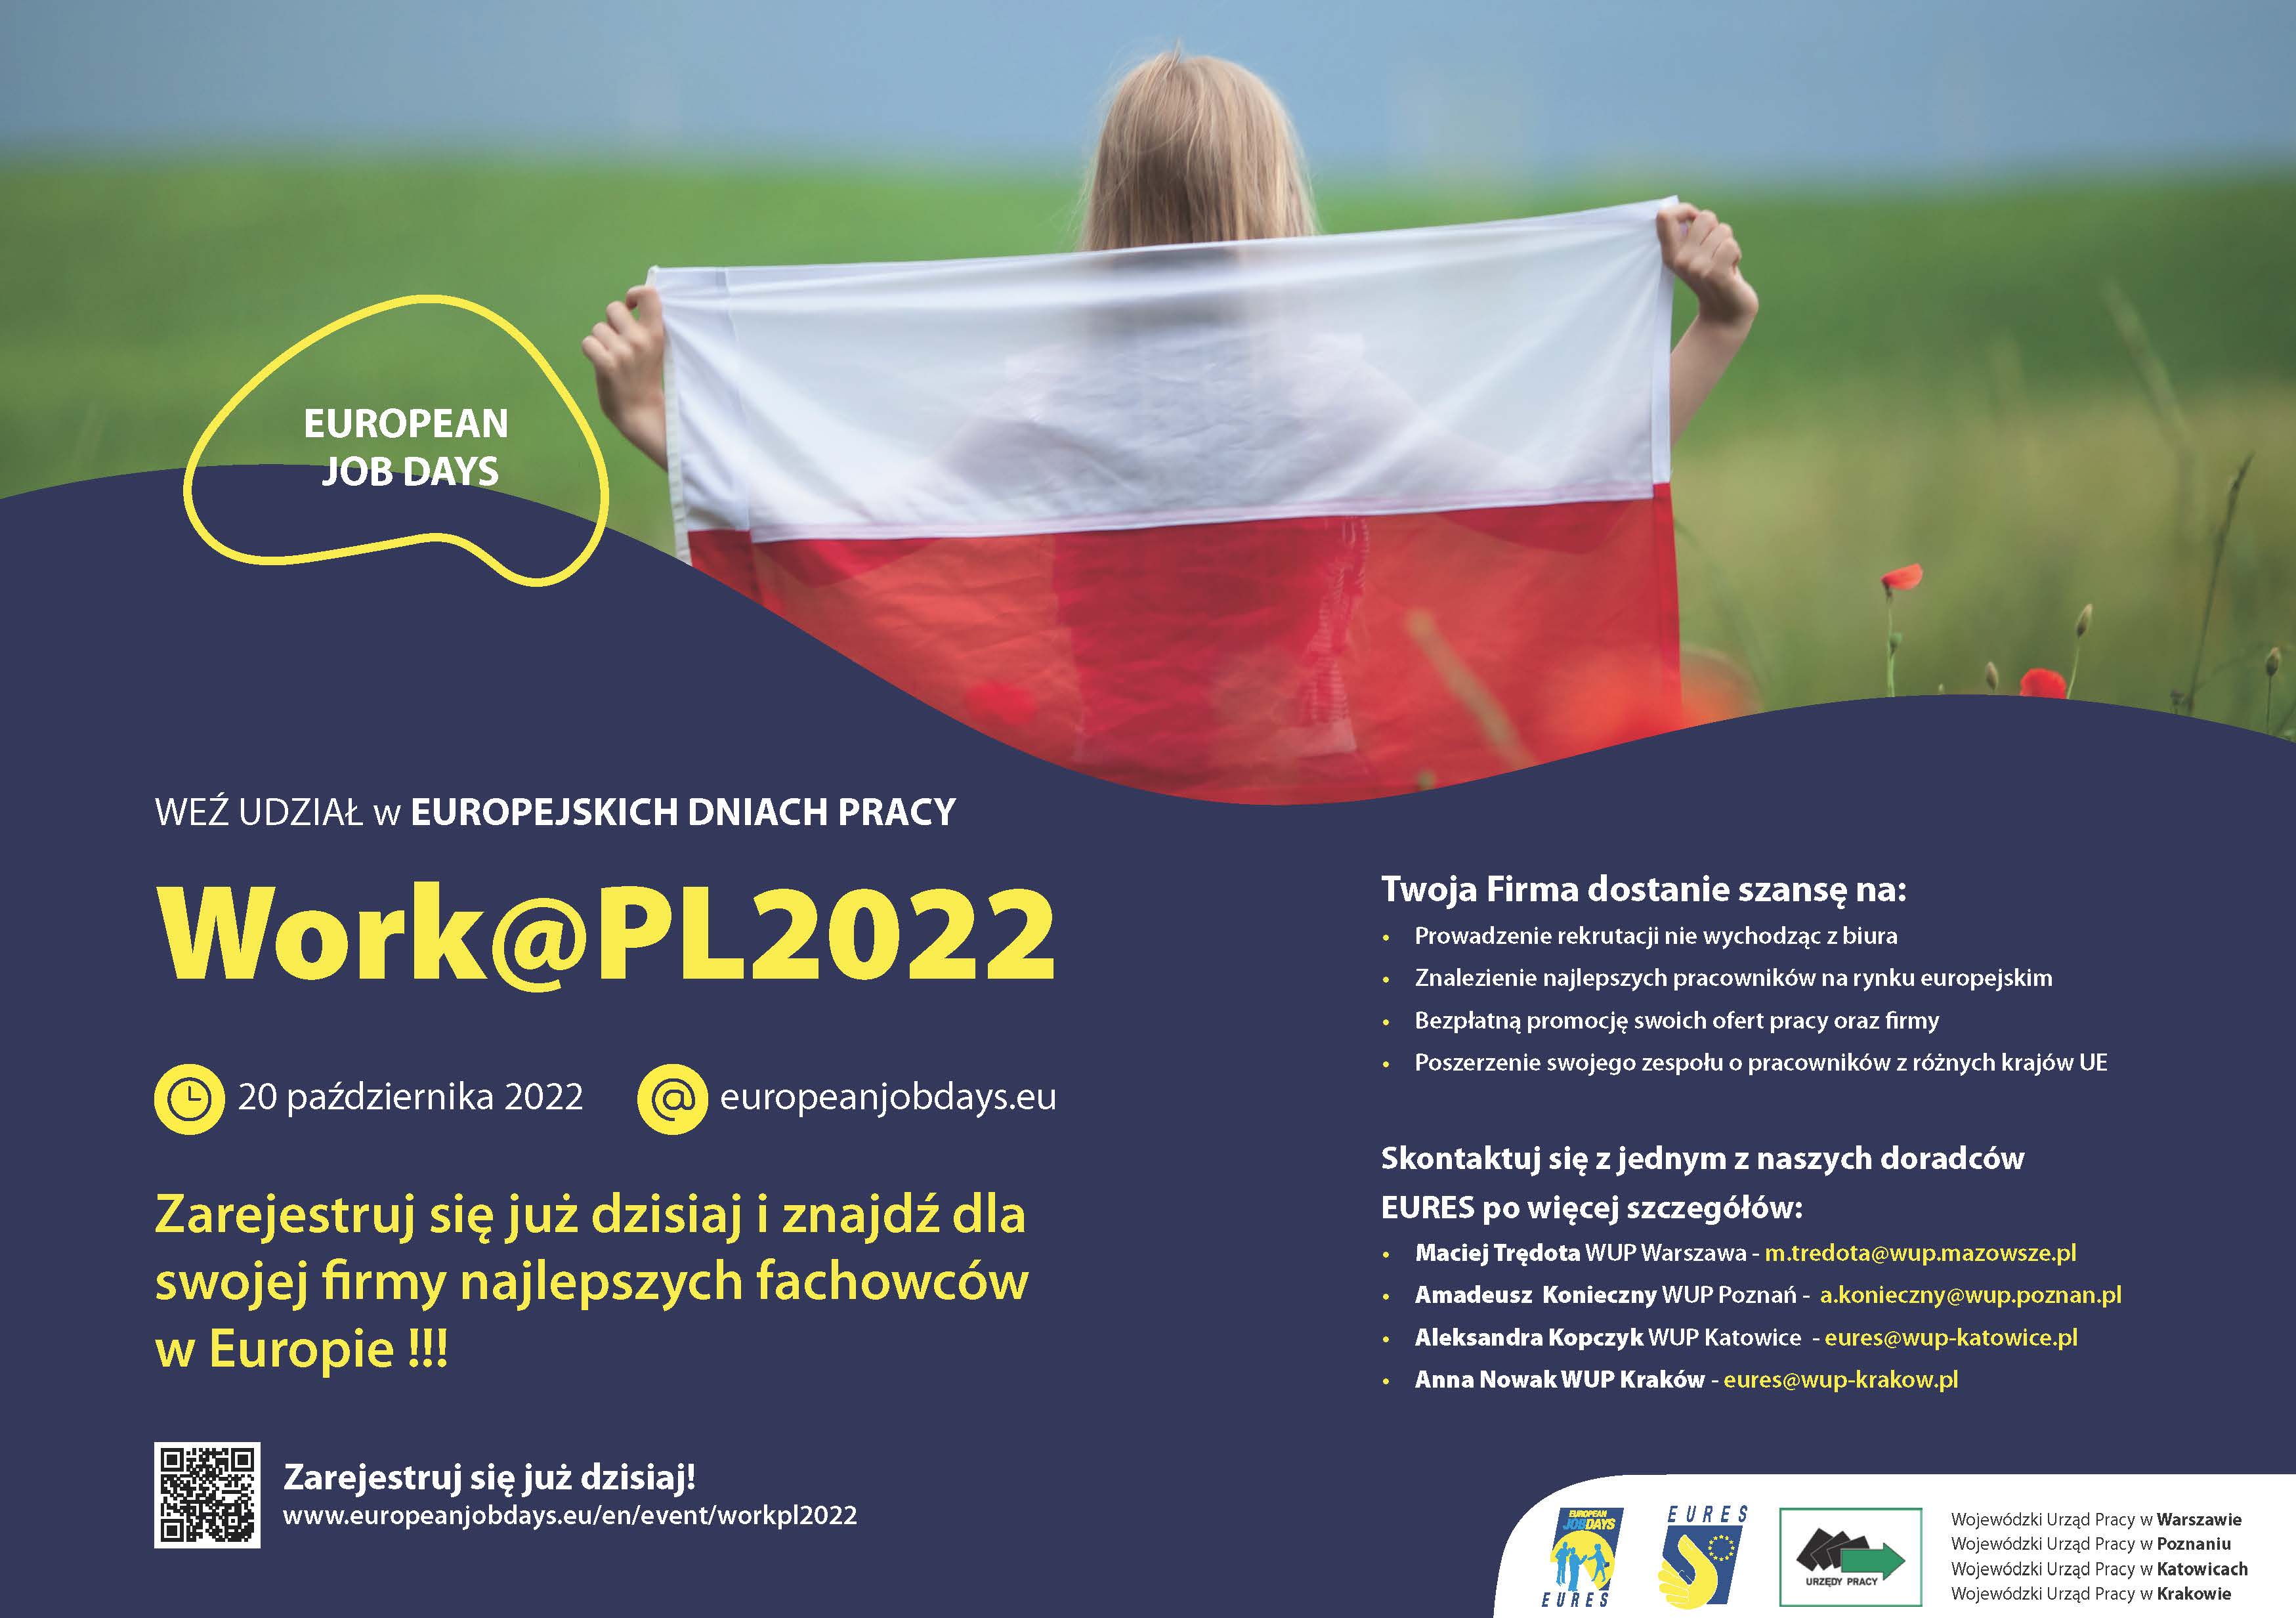 Obrazek dla: Europejskie Dni Pracy (EDP) on-line pod nazwą Work@PL2022